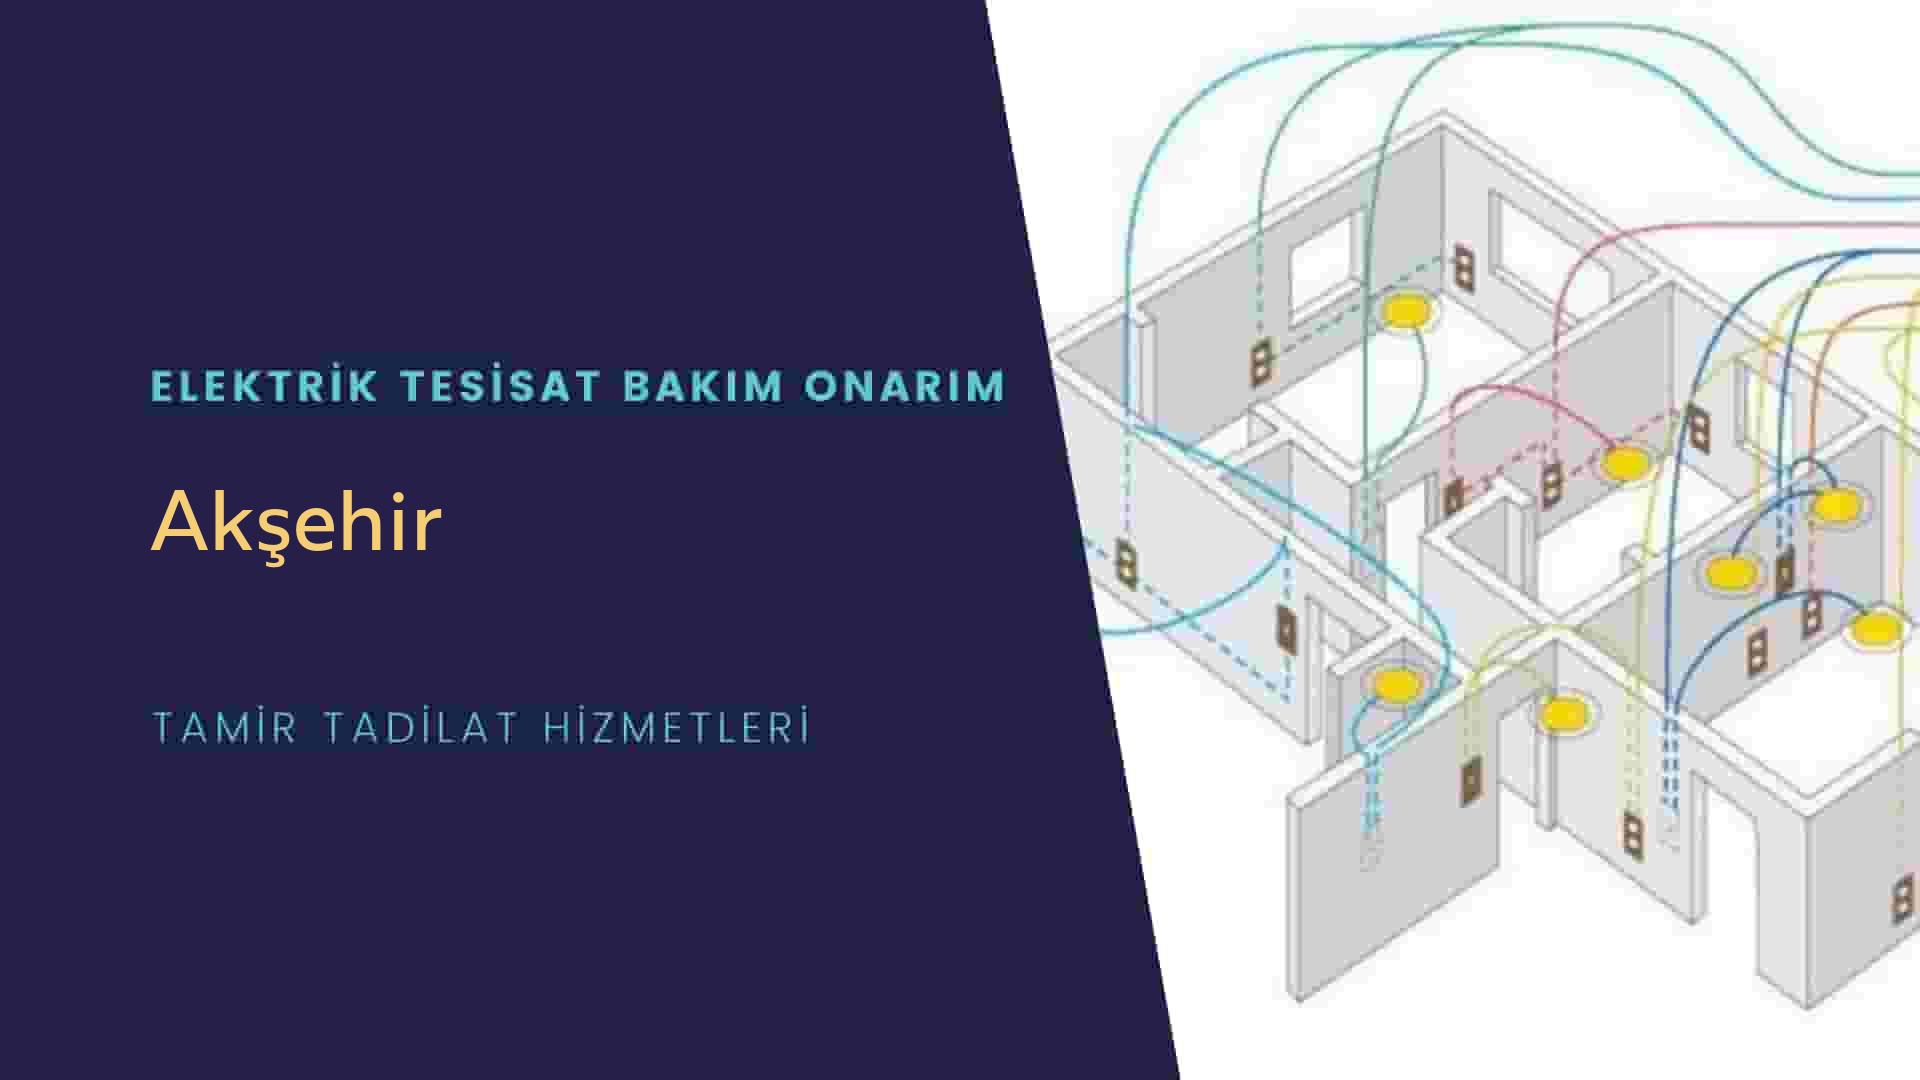 Akşehir'de elektrik tesisatı ustalarımı arıyorsunuz doğru adrestenizi Akşehir elektrik tesisatı ustalarımız 7/24 sizlere hizmet vermekten mutluluk duyar.